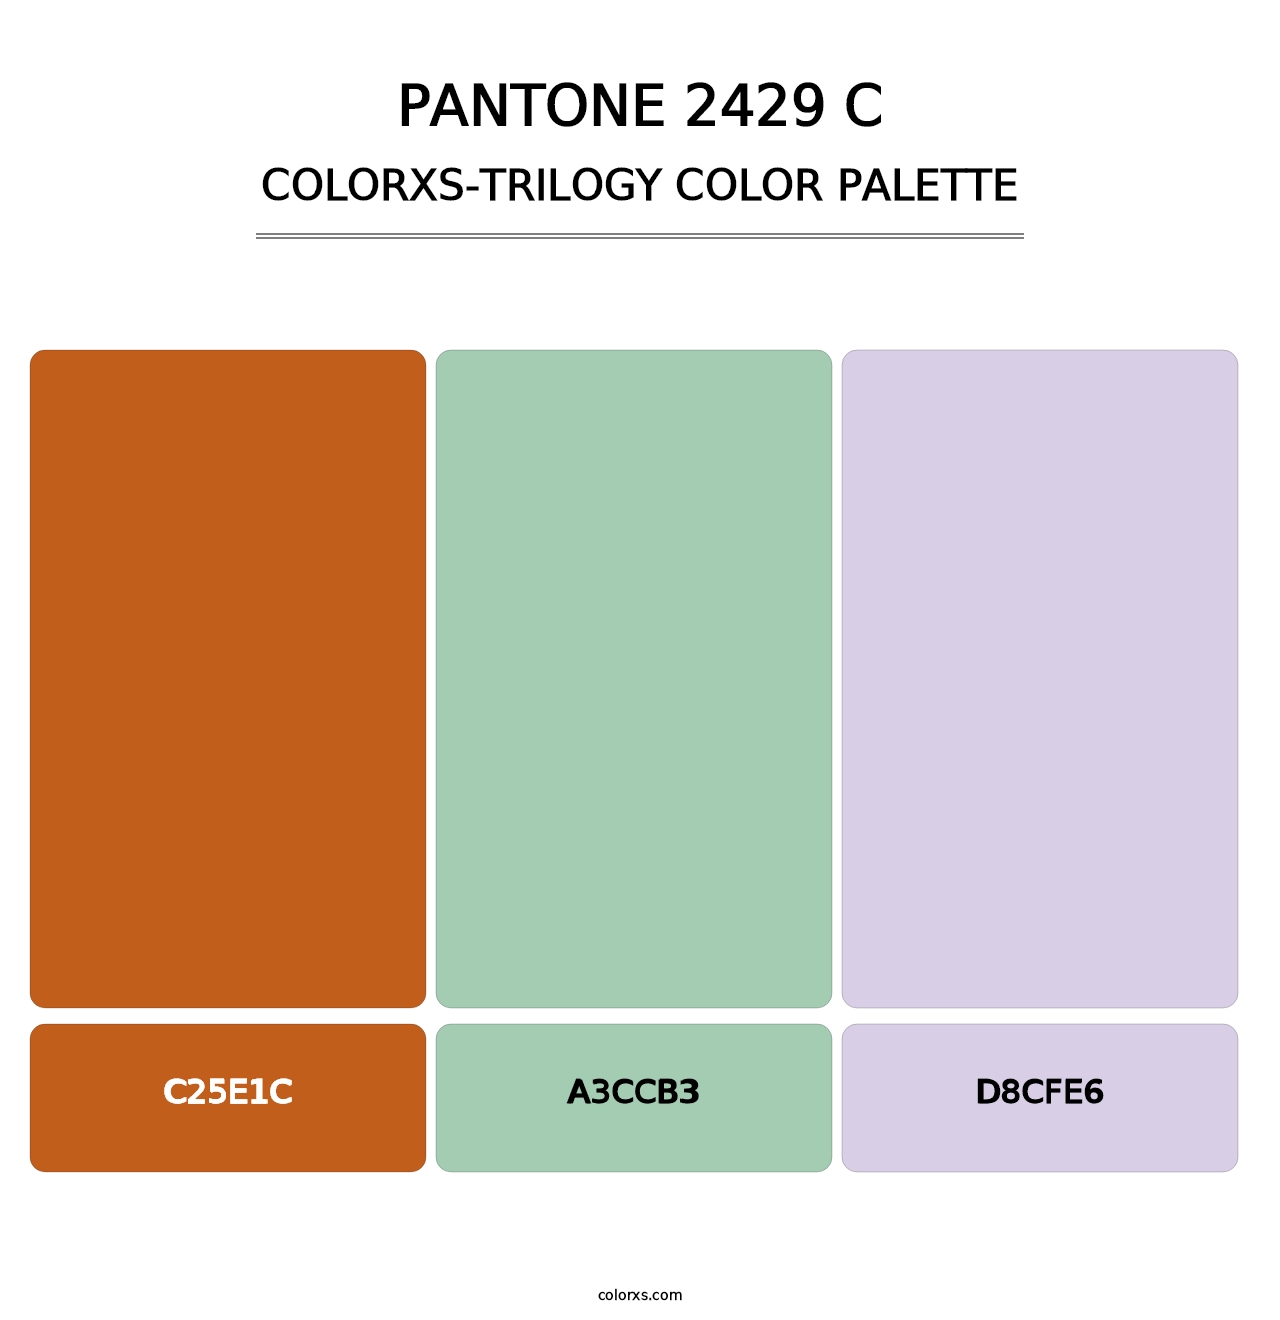 PANTONE 2429 C - Colorxs Trilogy Palette